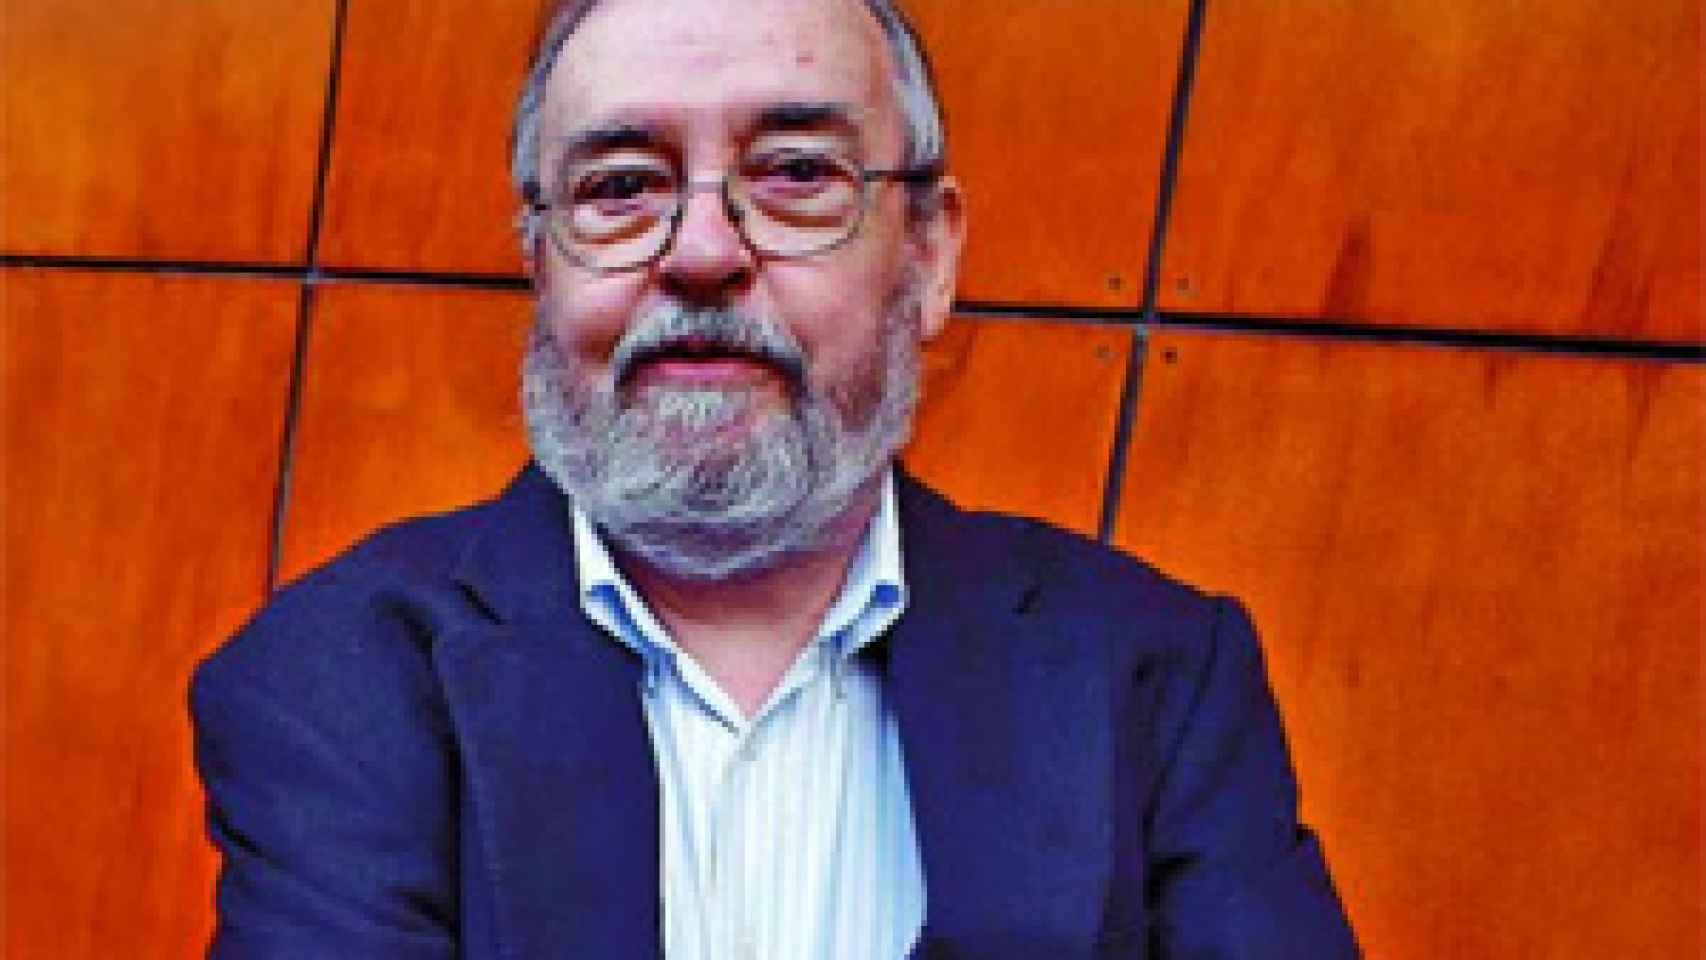 Image: José Luis García Sánchez